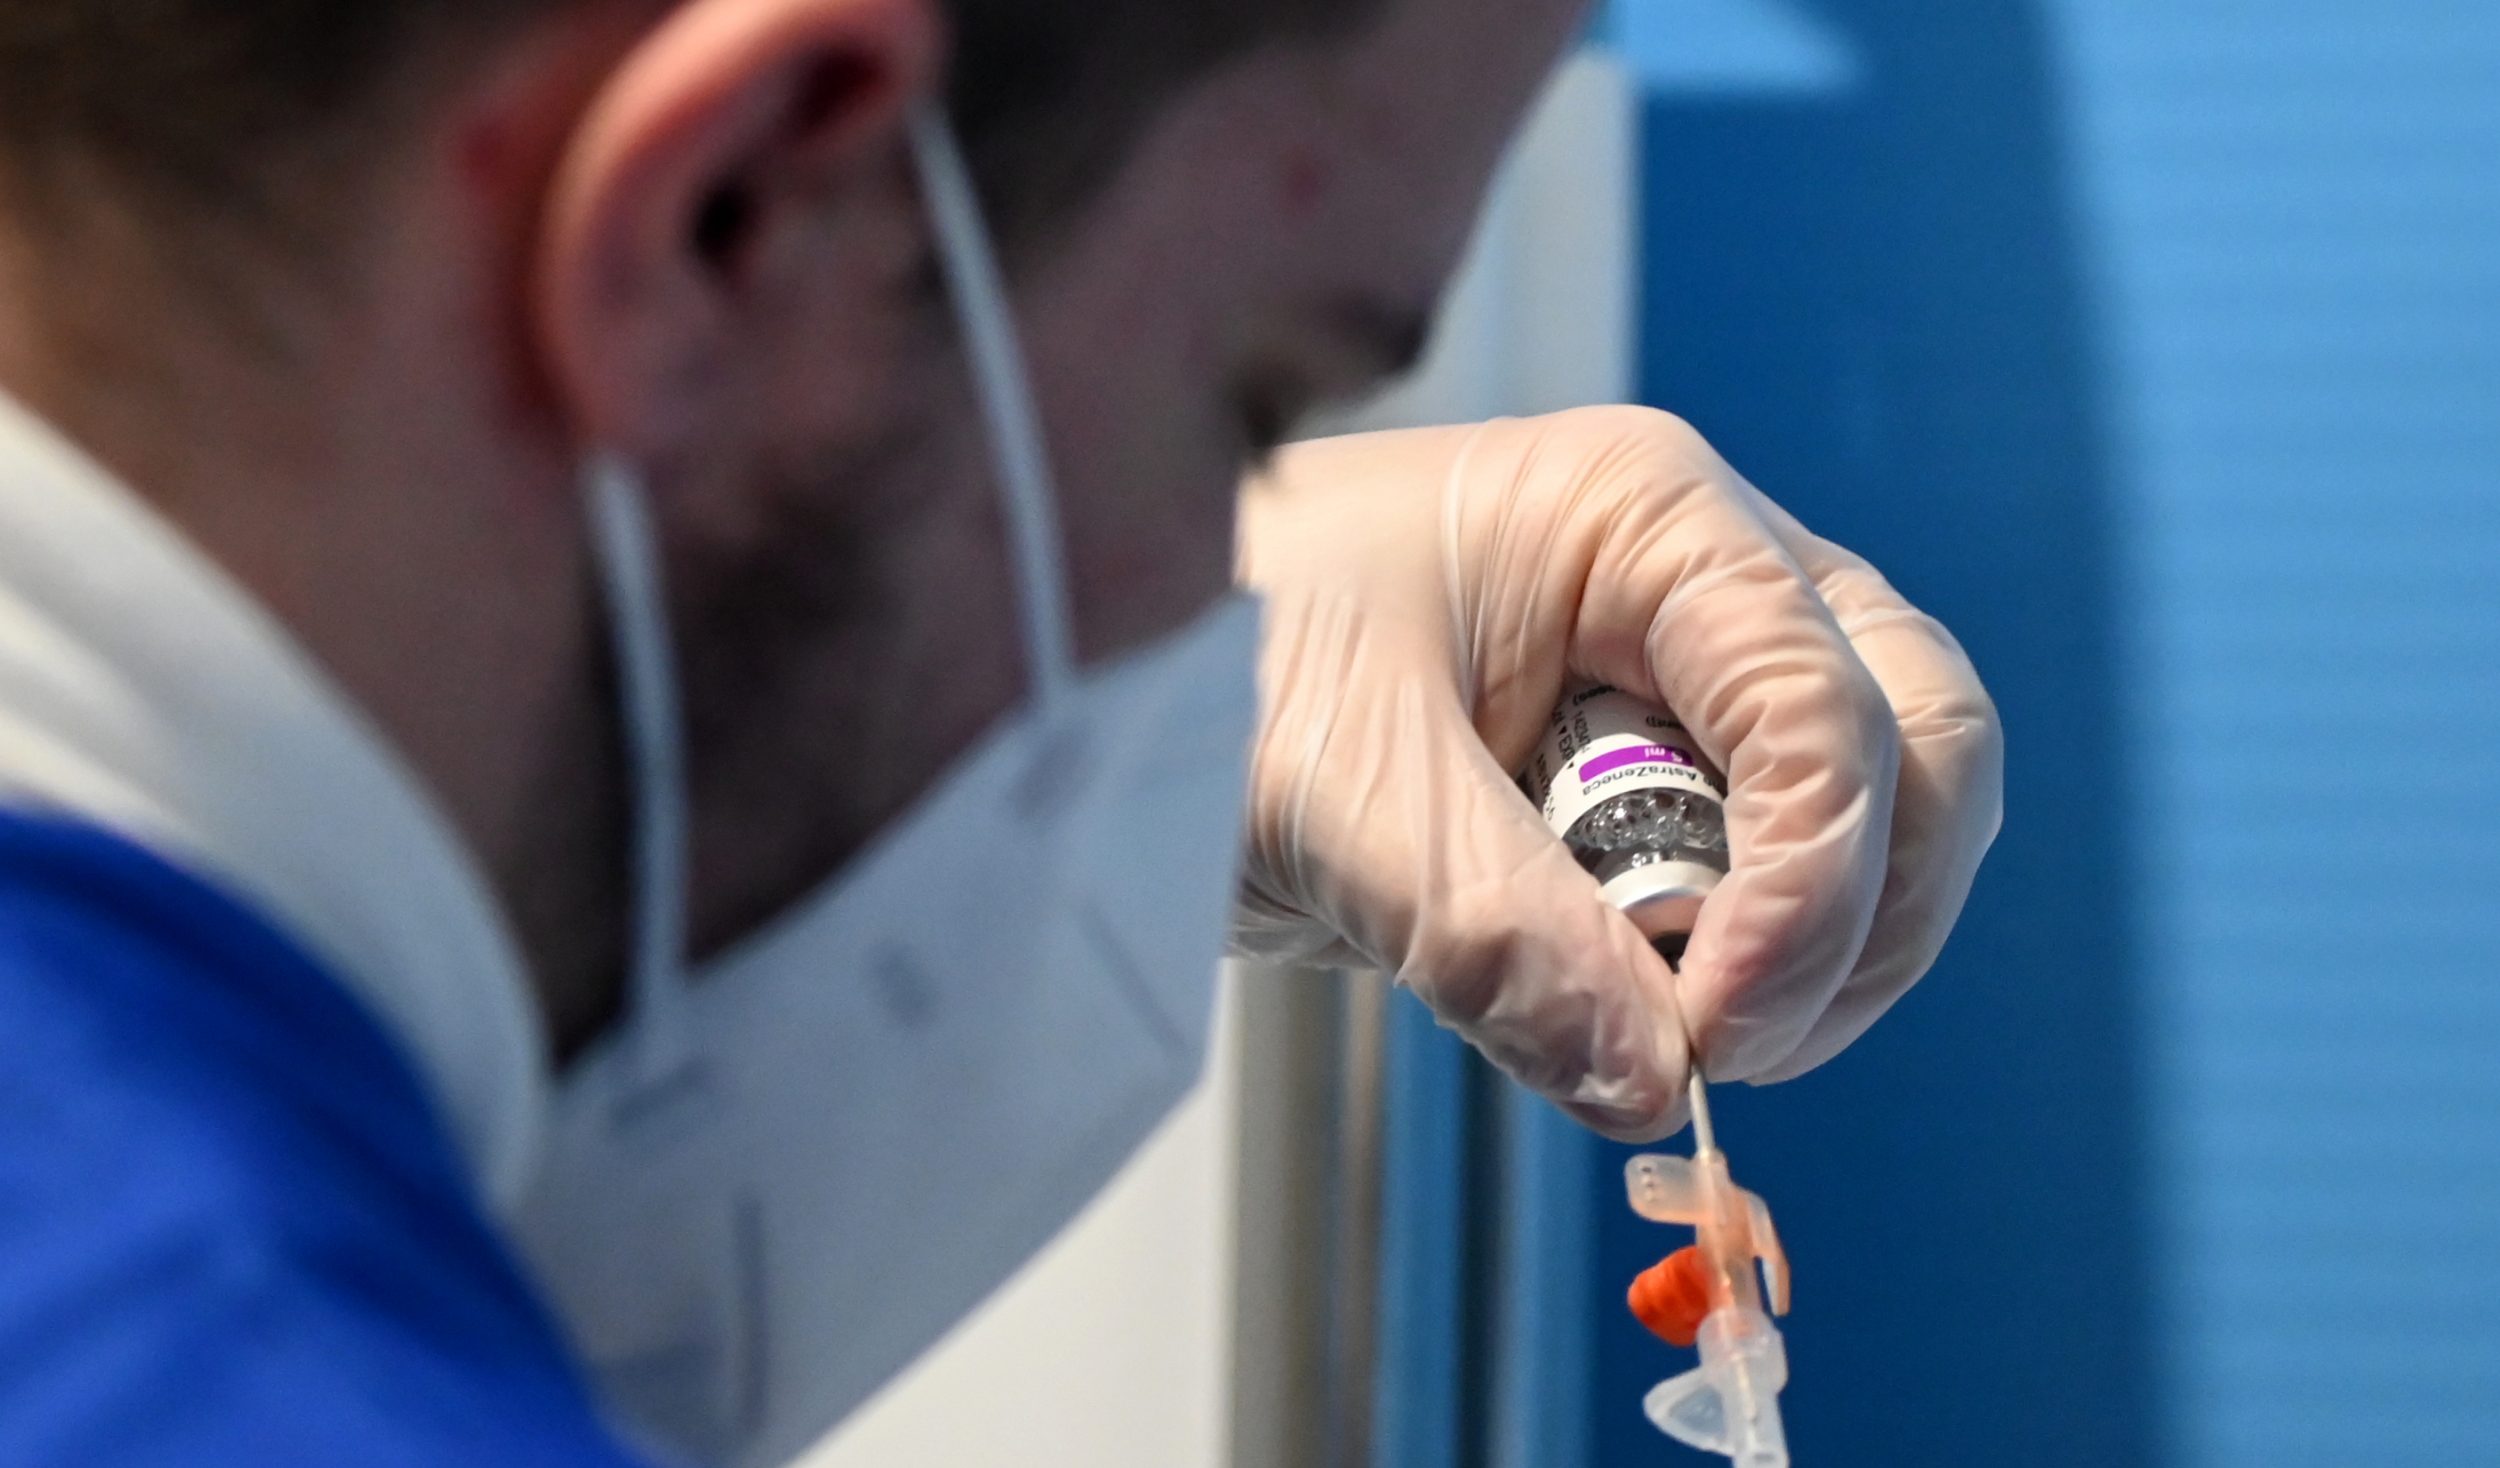 Covid, 150mila morti in meno grazie alla campagna vaccinale: lo studio dell'Iss